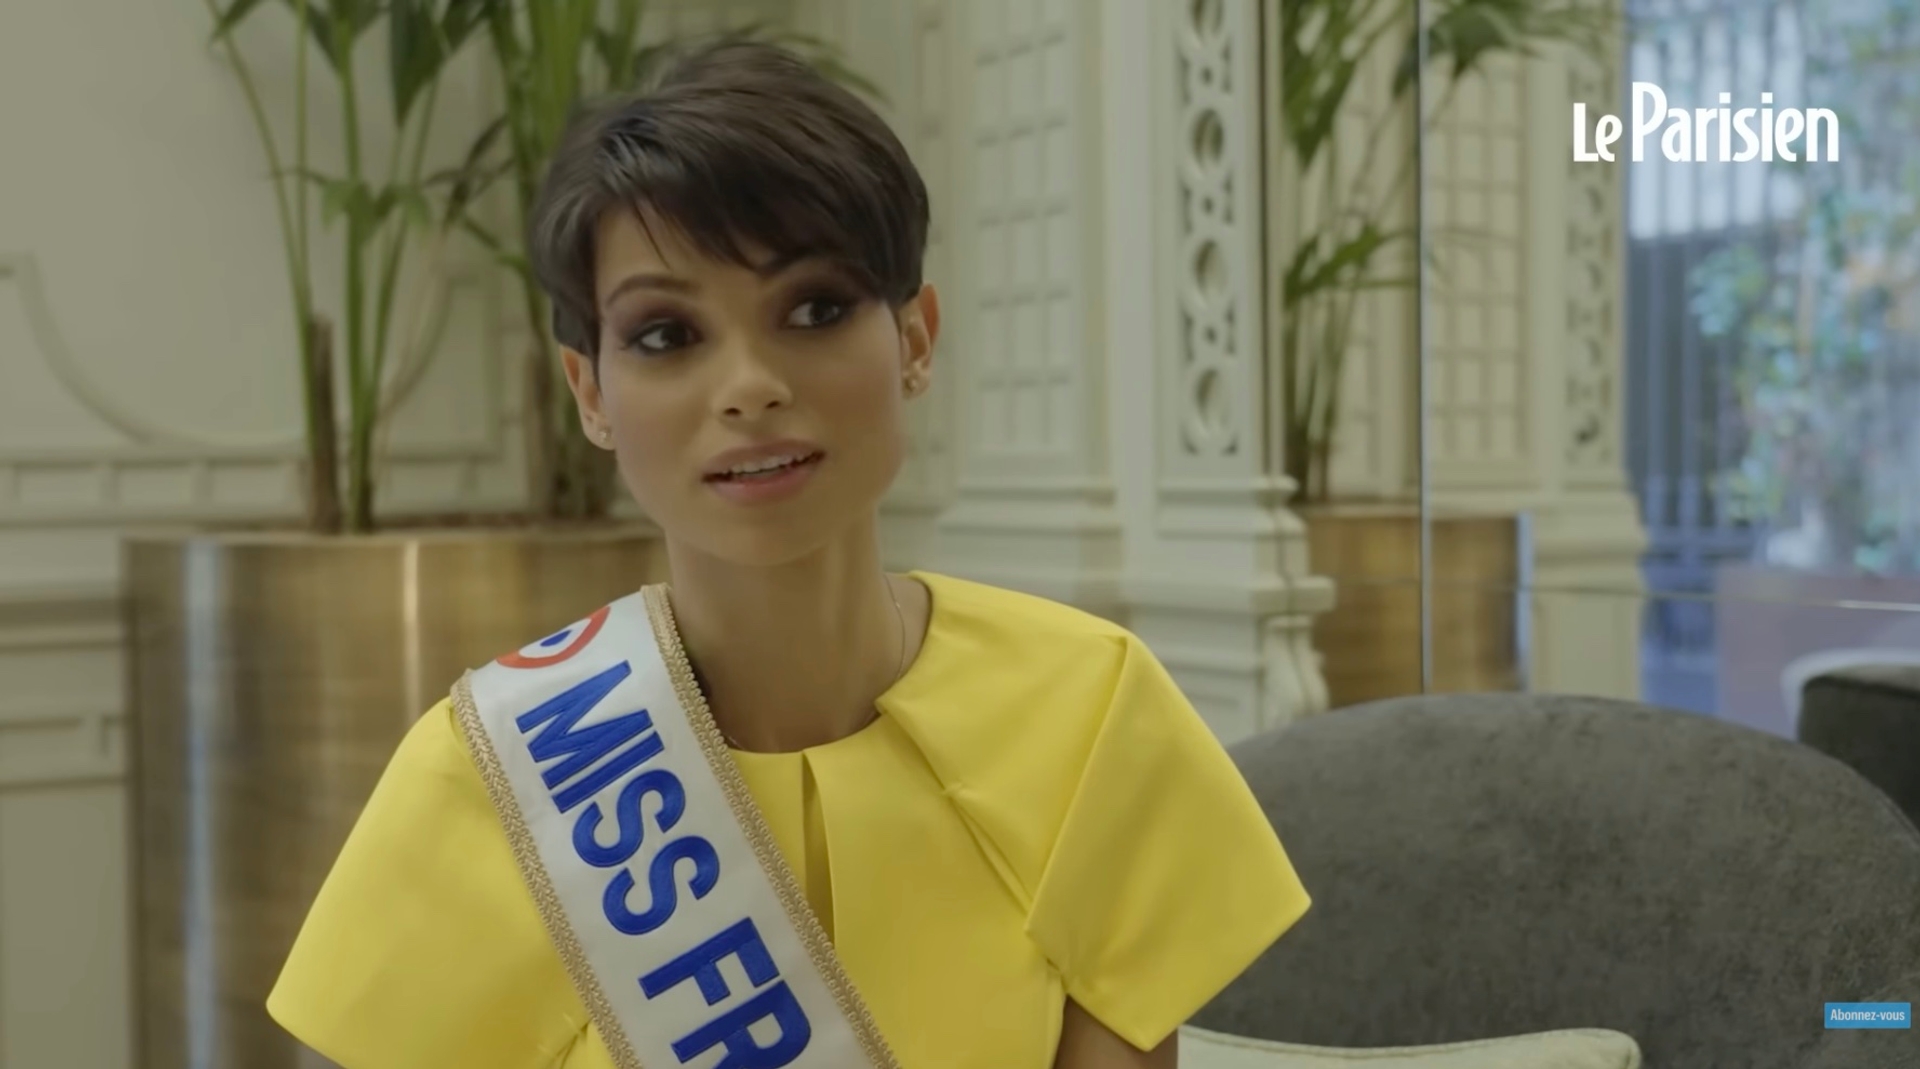 Afbeelding van Rechts Frankrijk woedend omdat Miss France kort haar heeft: 'Alles wordt woke en inclusief'